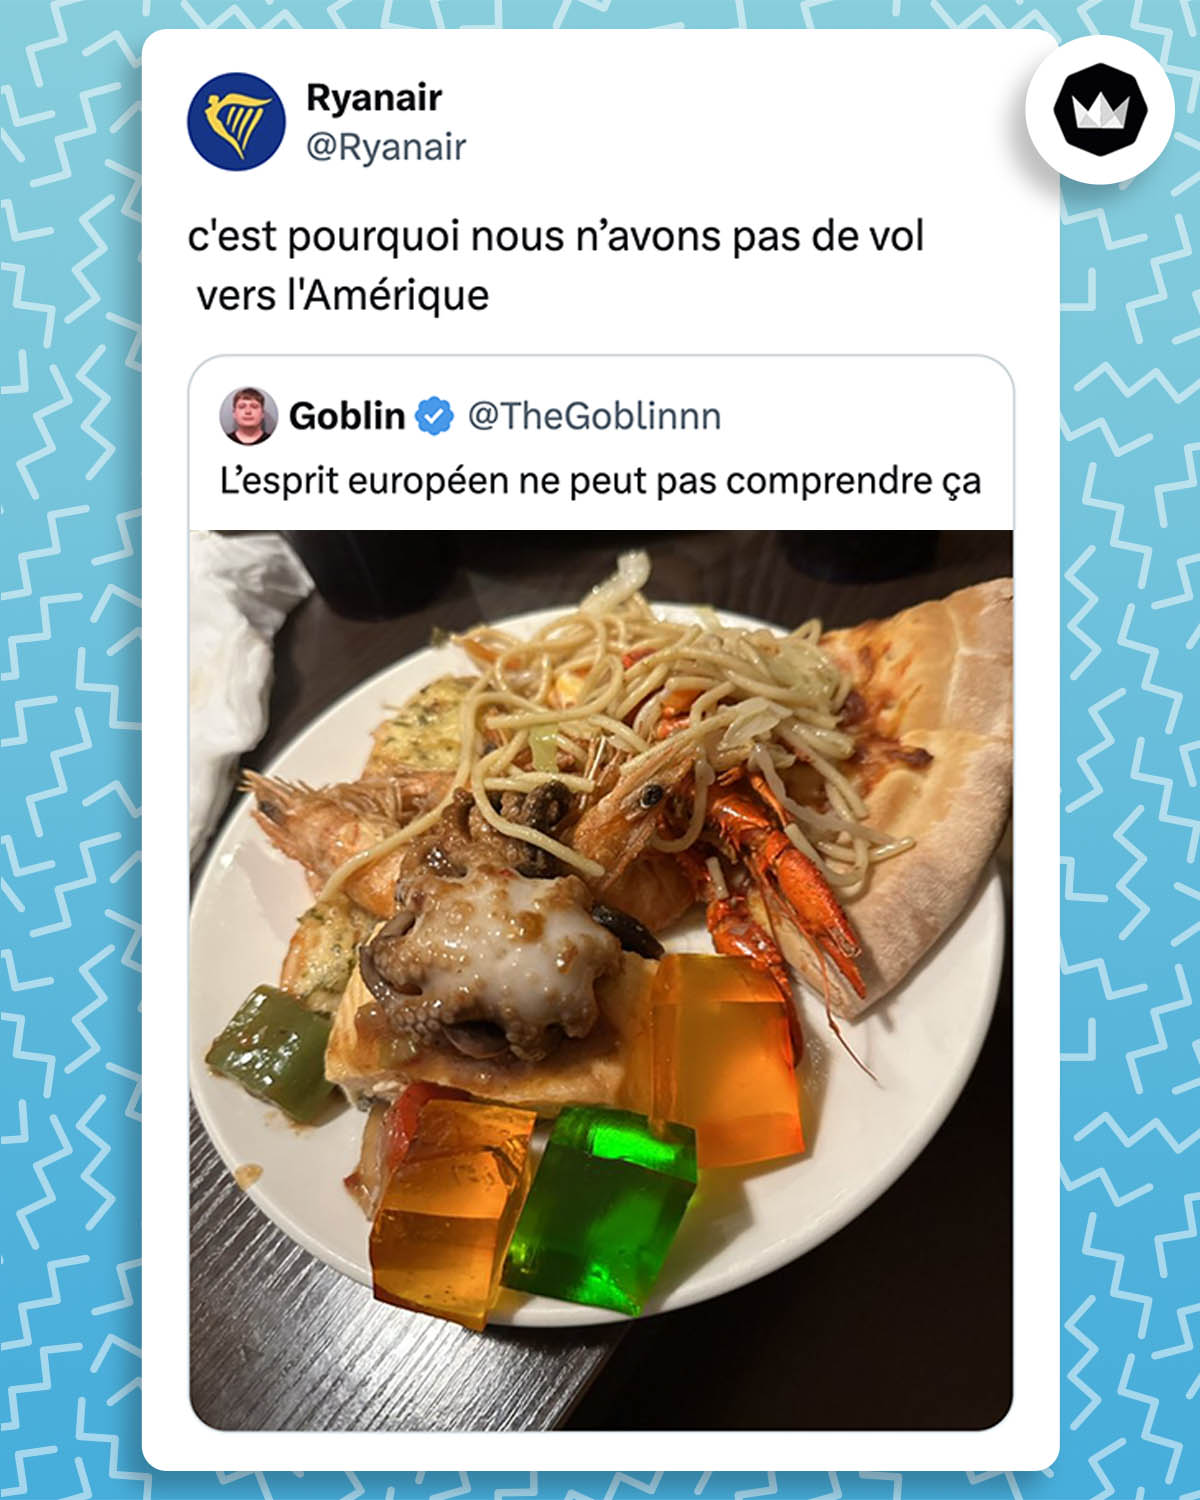 internaute : 
"L’esprit européen ne peut pas comprendre ça" accompagné d'une photo d'une assiette contenant des nouilles chinoise, de la gelée verte et orange, de fruits de mer, de pizza et peut-être d'autres aliments qui n'ont rien à faire là.

@Ryanair : 
"C'est pourquoi nous n’avons pas de vol vers l'Amérique"